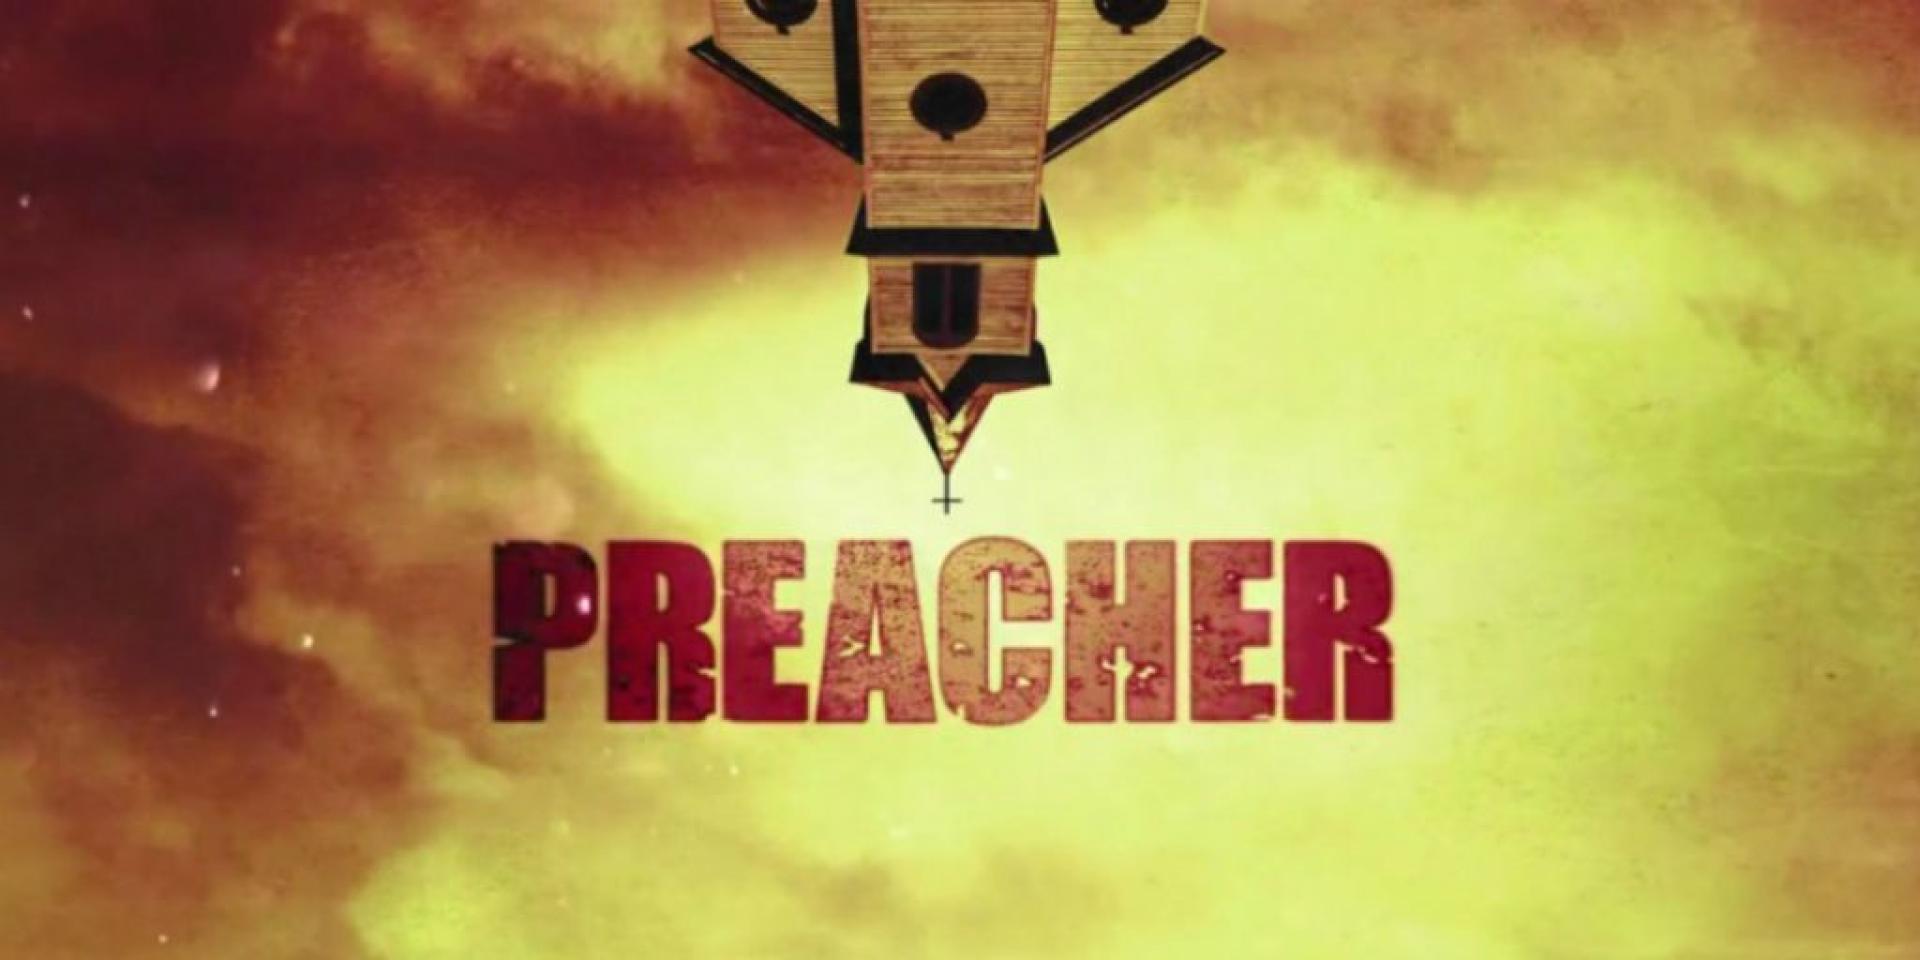 Preacher 1. évad értékelése (2016)